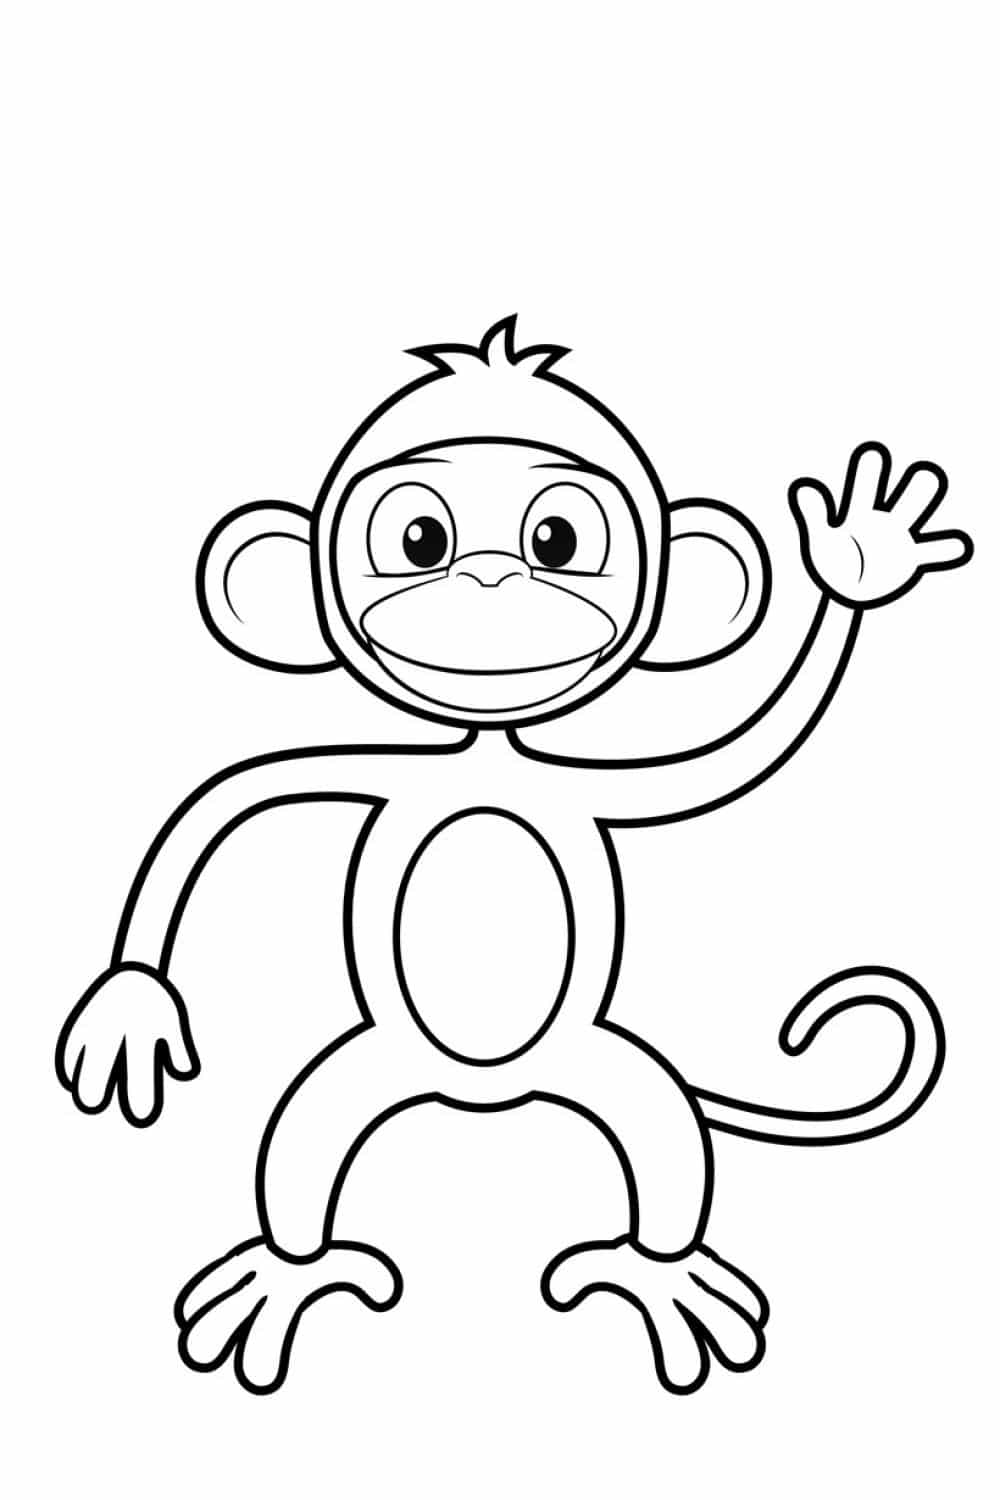 ציור פשוט לצביעה של קוף מרים יד